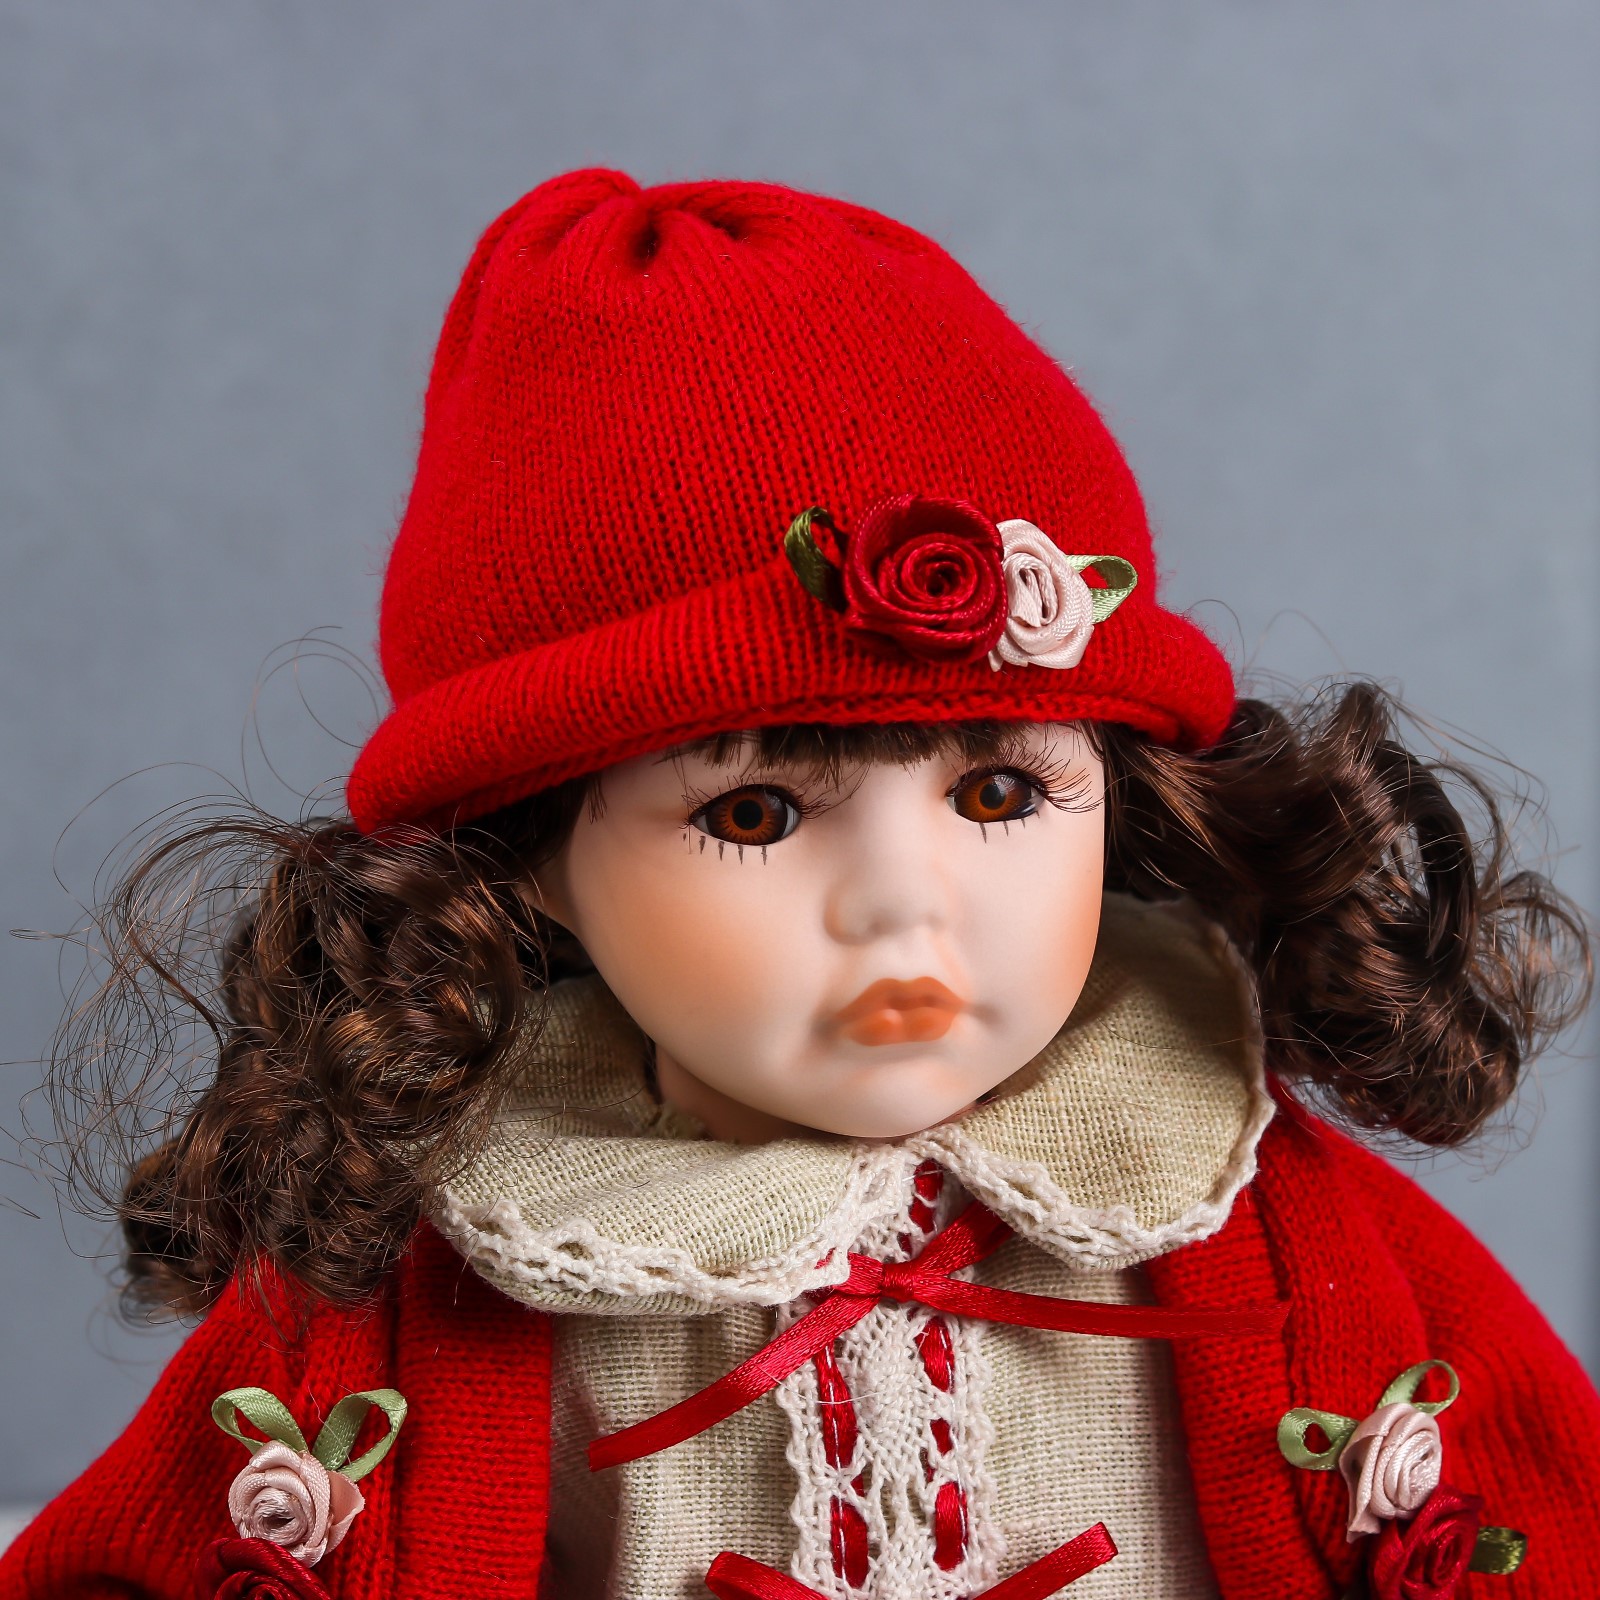 Кукла коллекционная Зимнее волшебство керамика «Лиза в платье с цветами в красном жакете» 30 см - фото 5